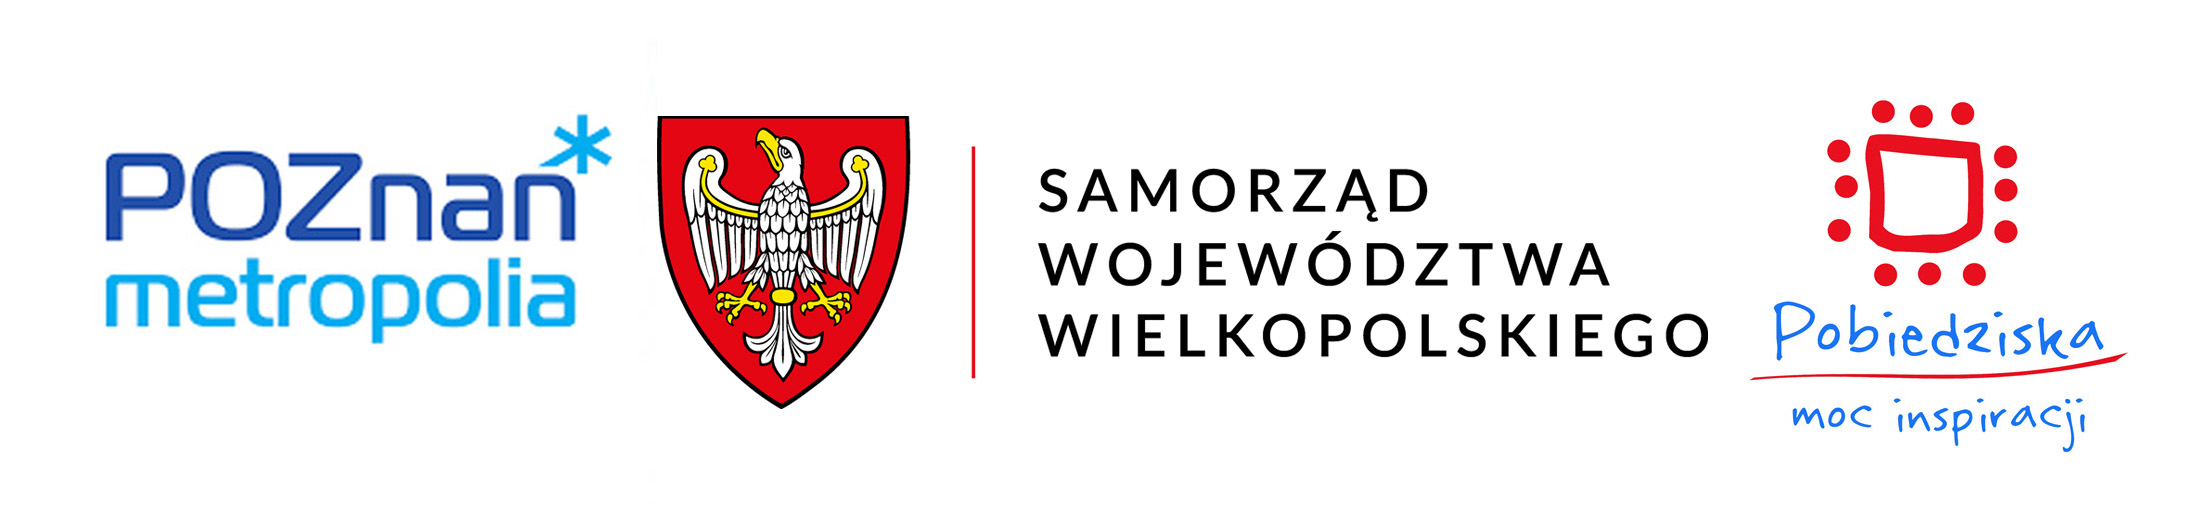 Metropolia Poznań Samorząd Urząd Marszałkowski Pobiedziska